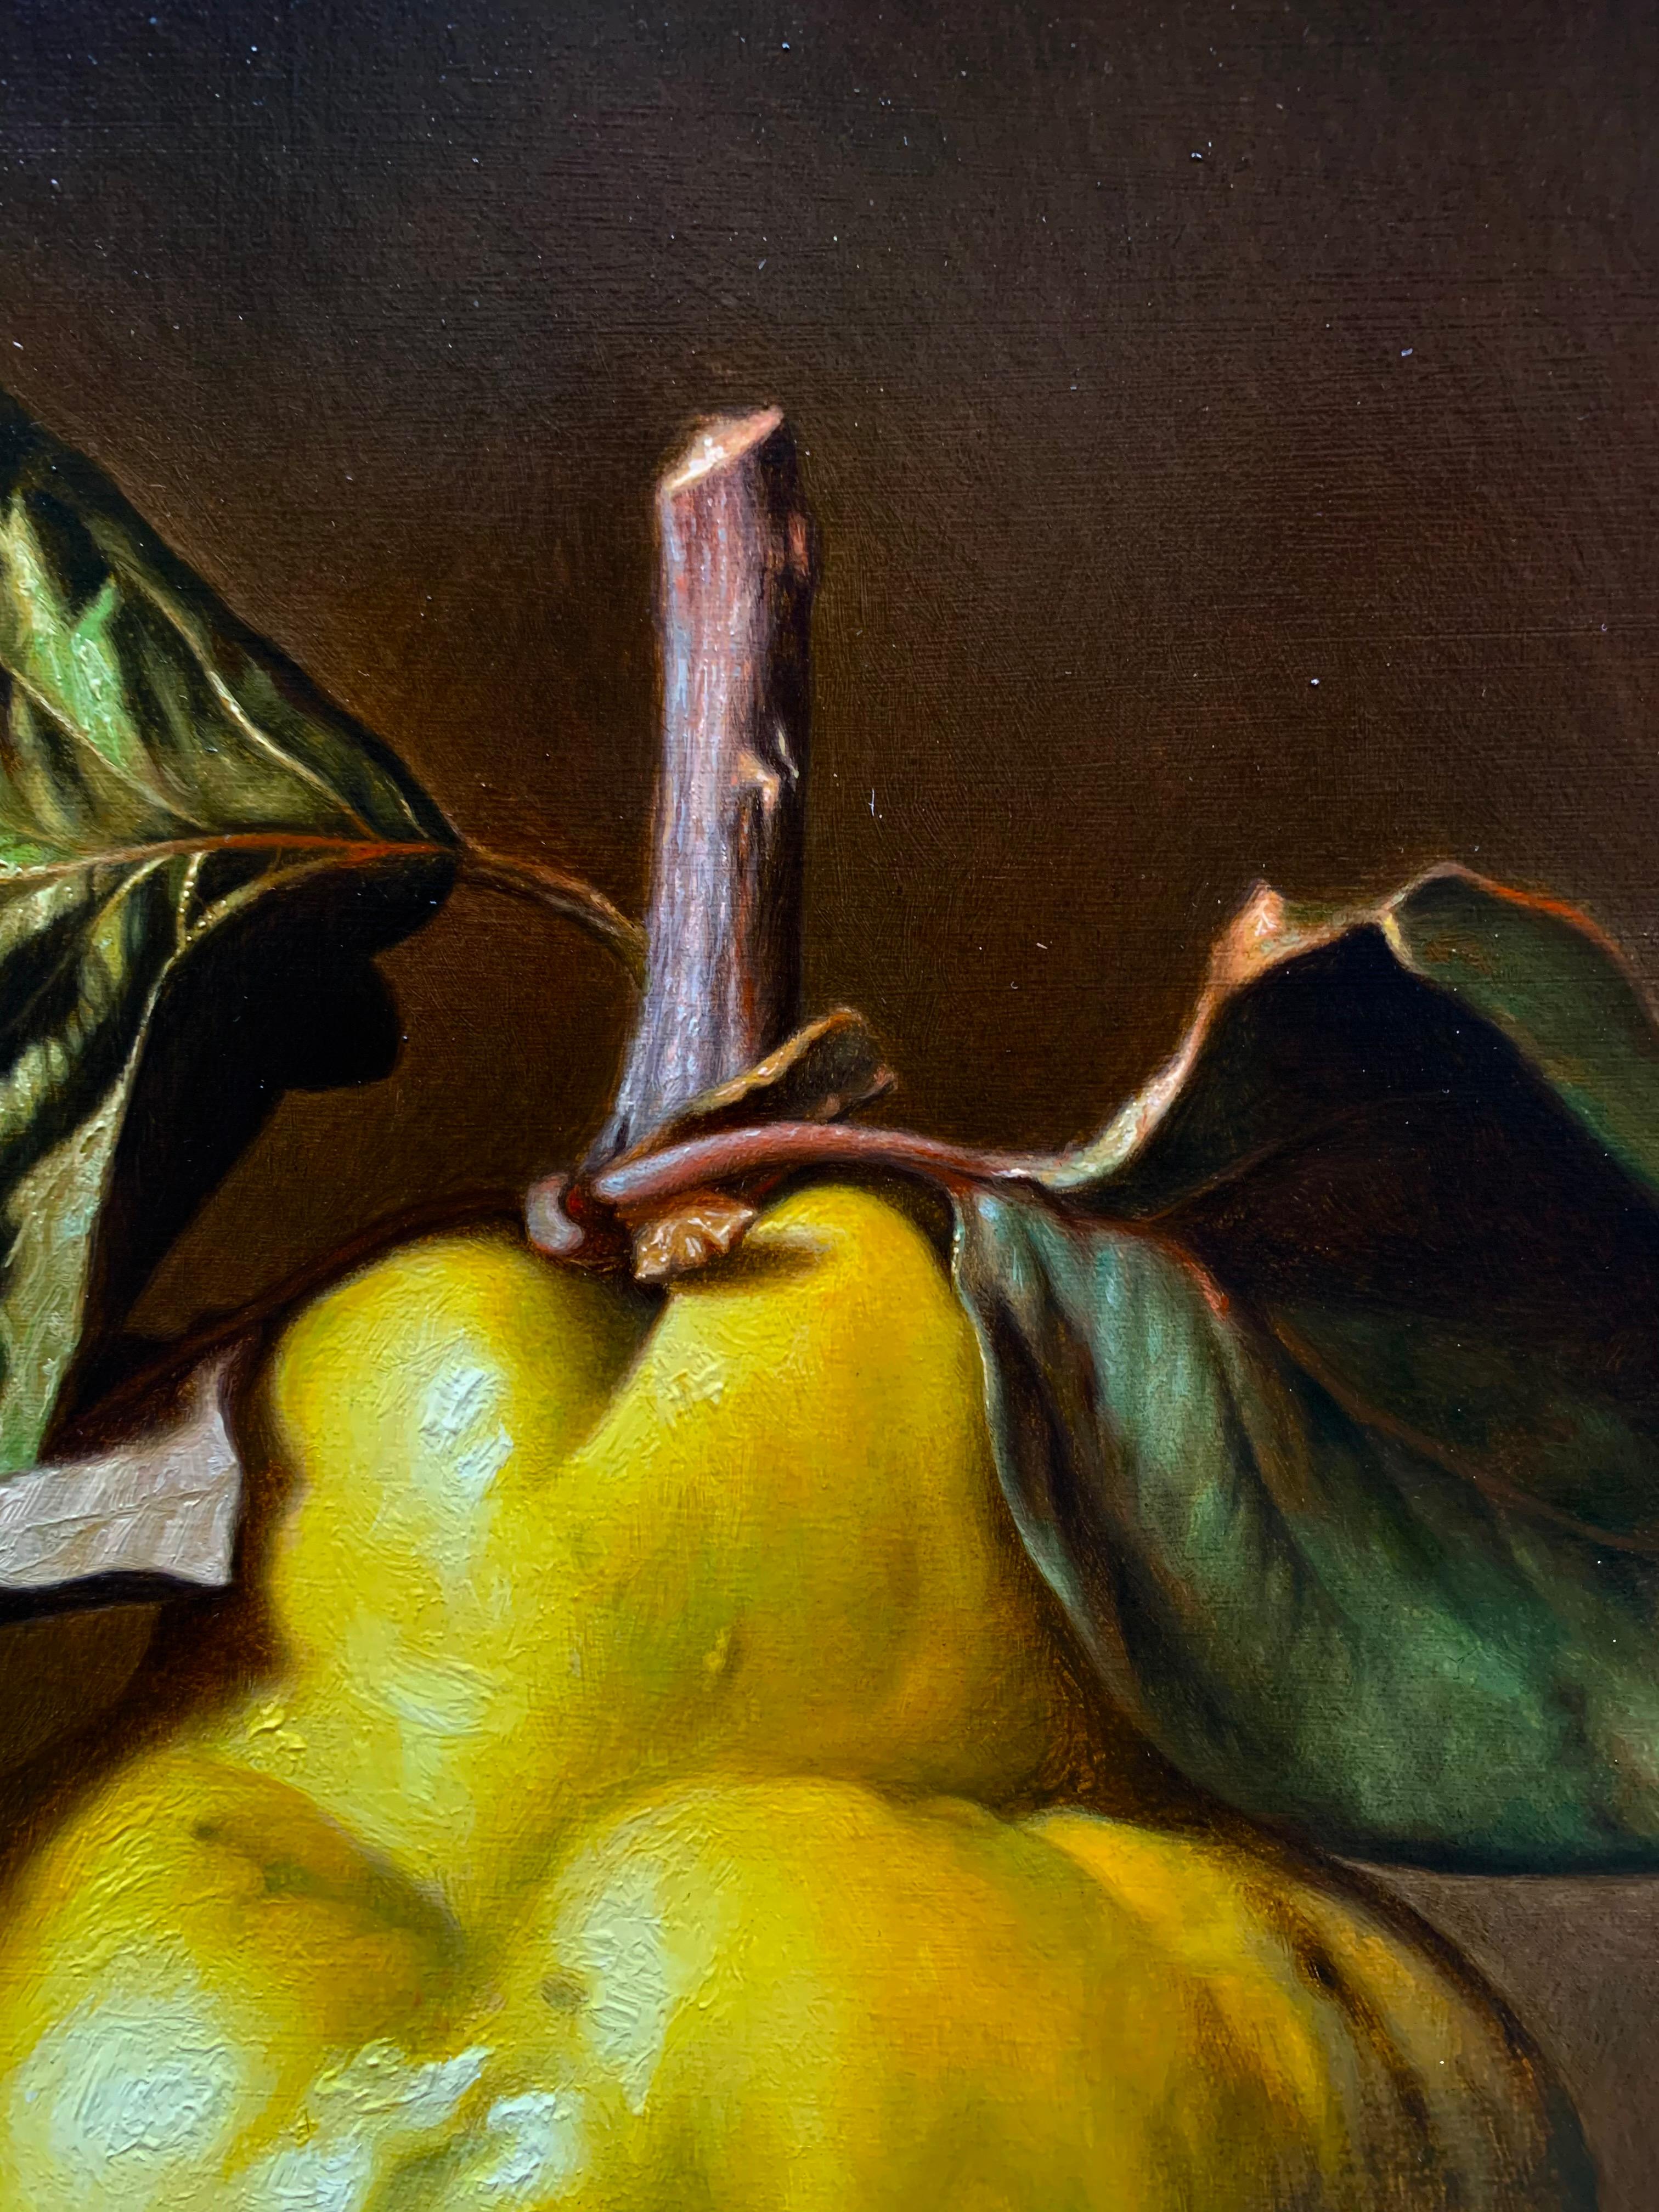 tableau fruits et legumes peintre